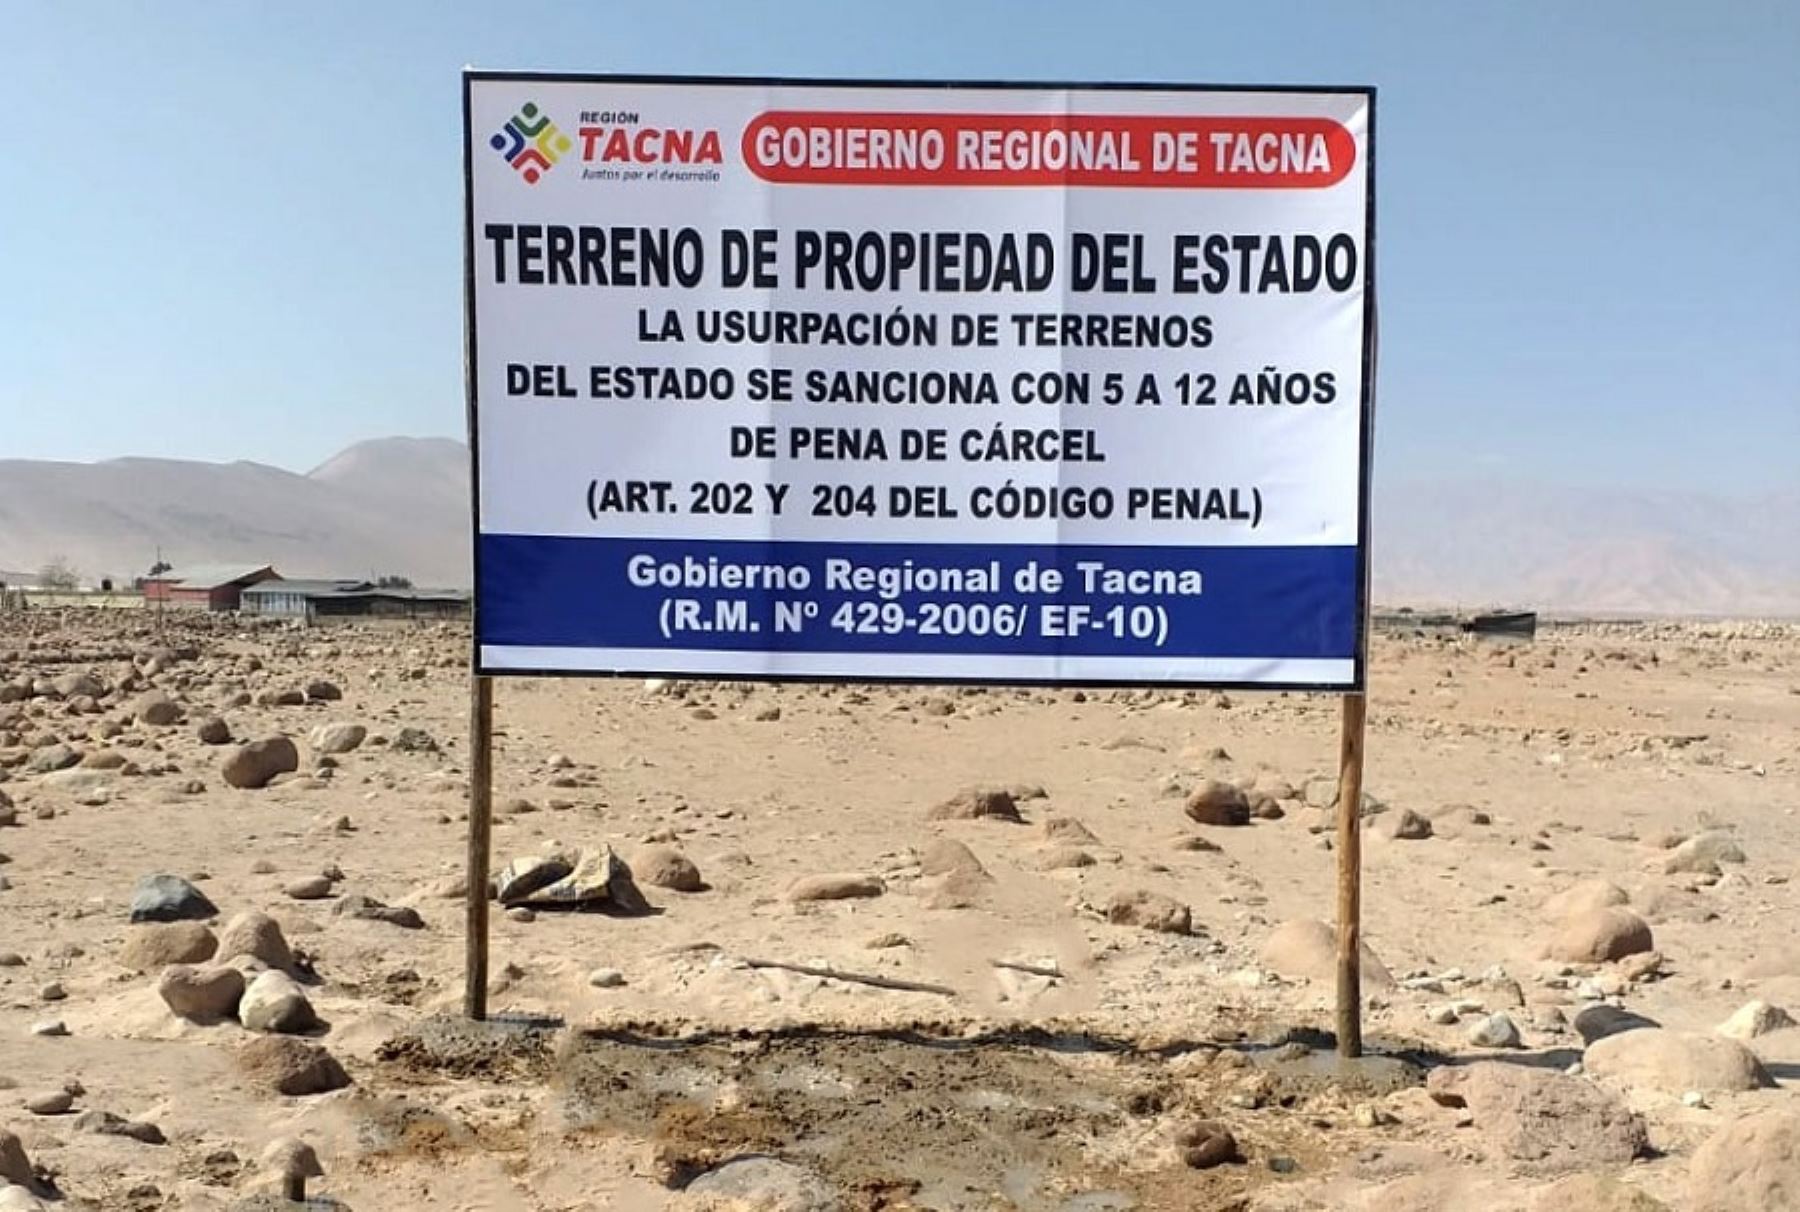 Cumpliendo su misión de resguardar los bienes del Estado, personal de la Procuraduría del Gobierno Regional de Tacna evitó la invasión de los terrenos ubicados en Cerro Blanco, distrito de Calana, que se encuentran bajo la administración regional.